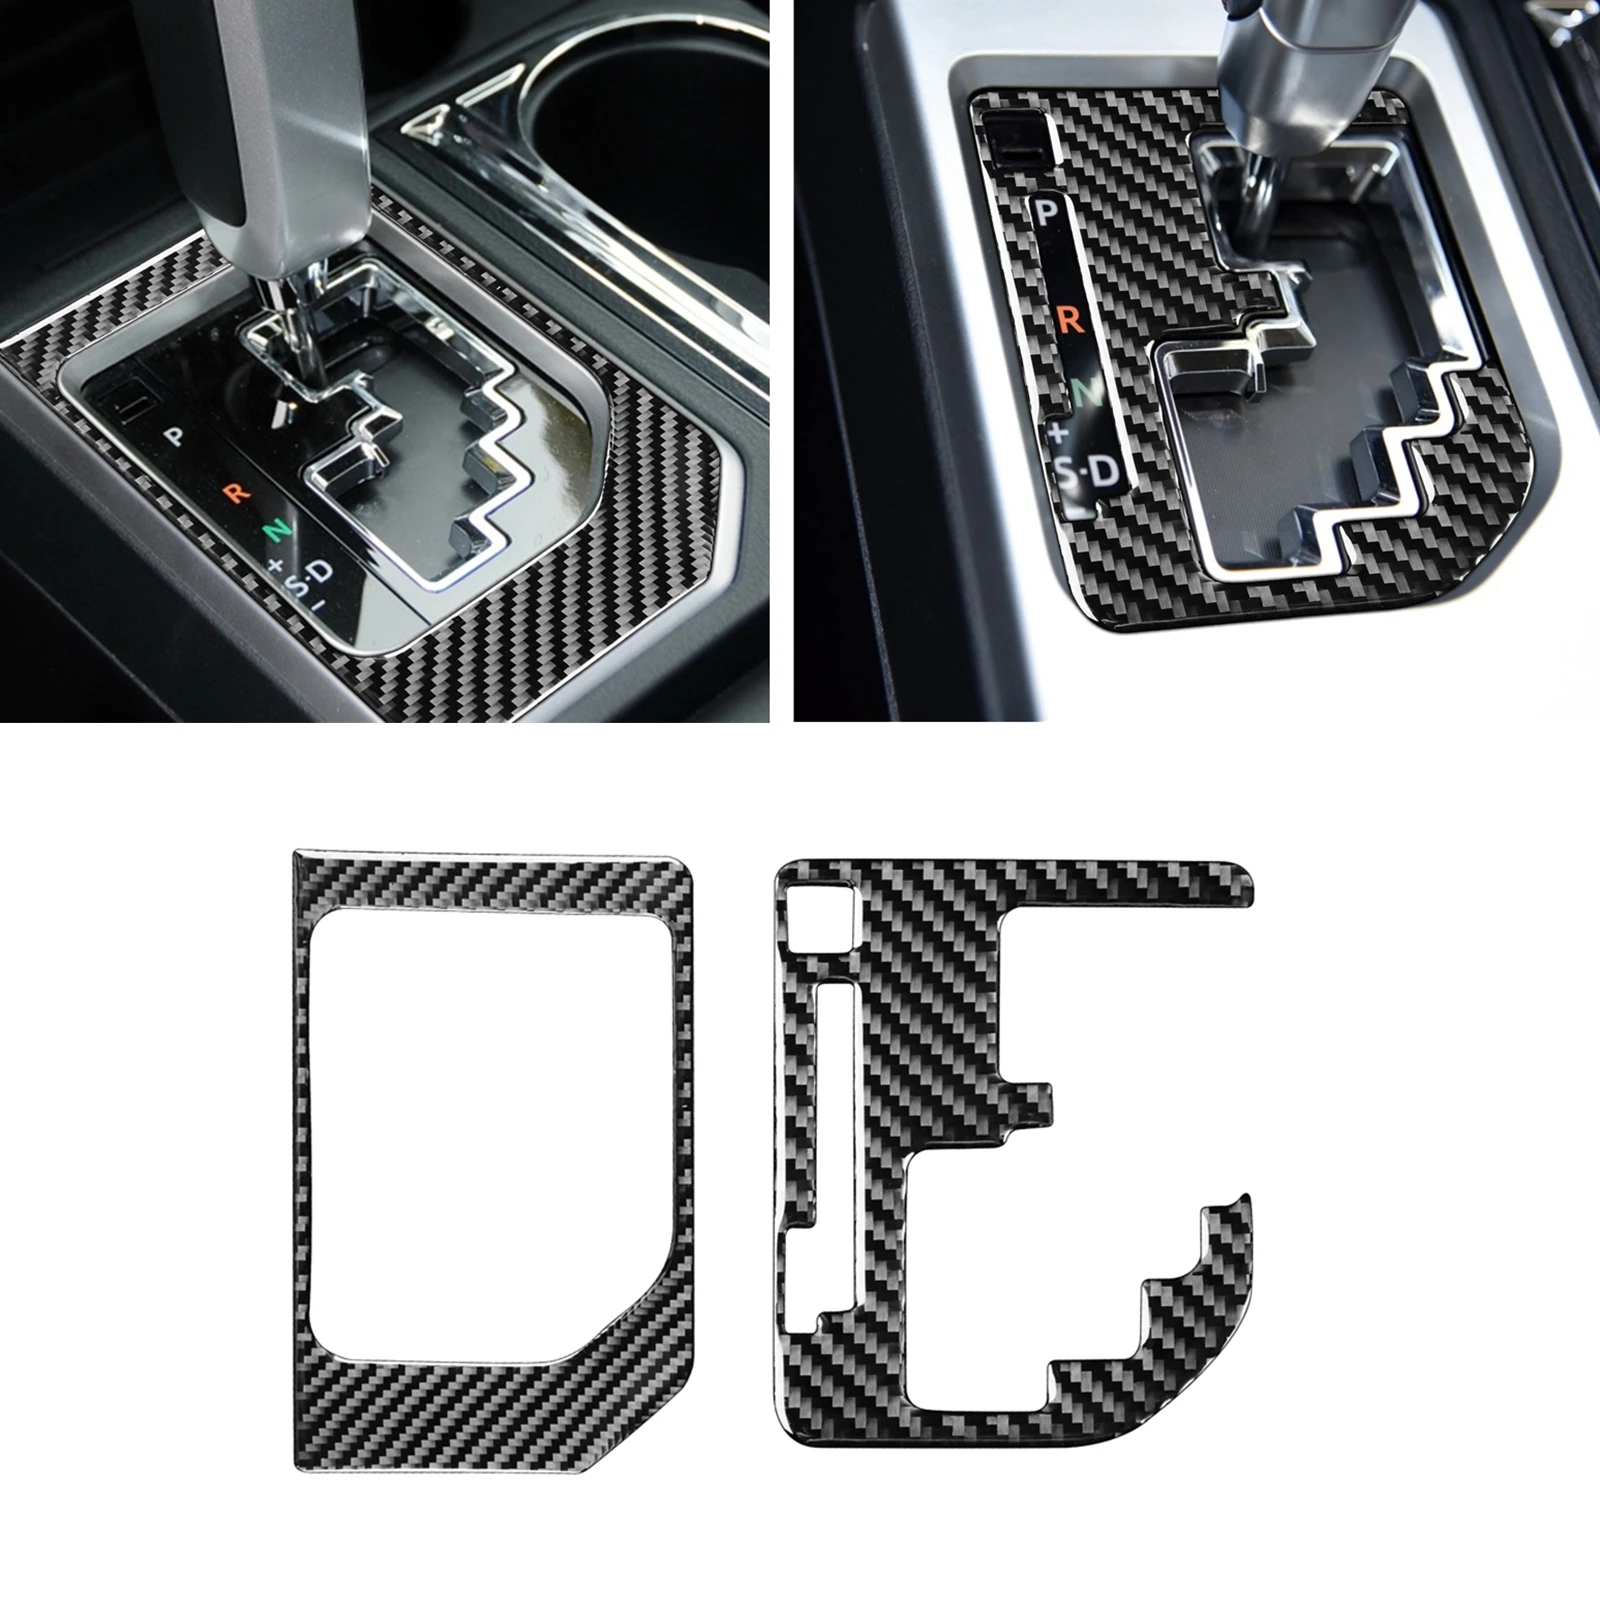 

Наклейка на рамку из углеродного волокна для интерьера автомобиля, внутренней отделки и переключателя передач для Toyota Tundra 2014-2018